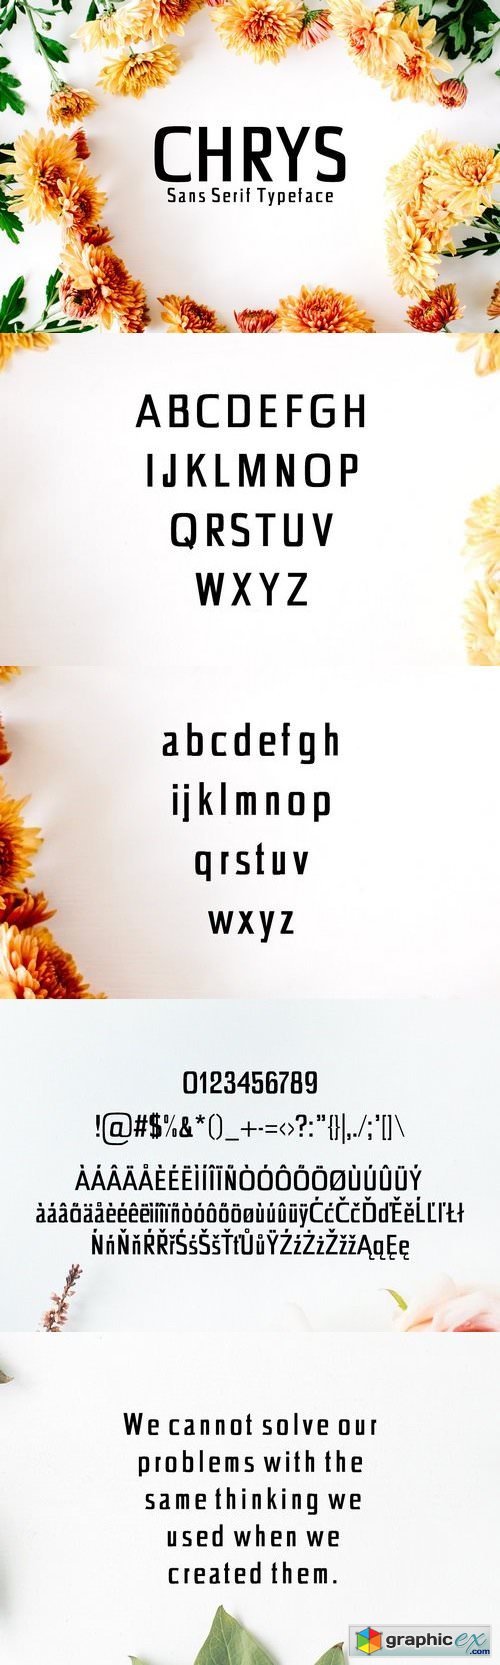 Chrys Sans Serif 4 Font Family Pack